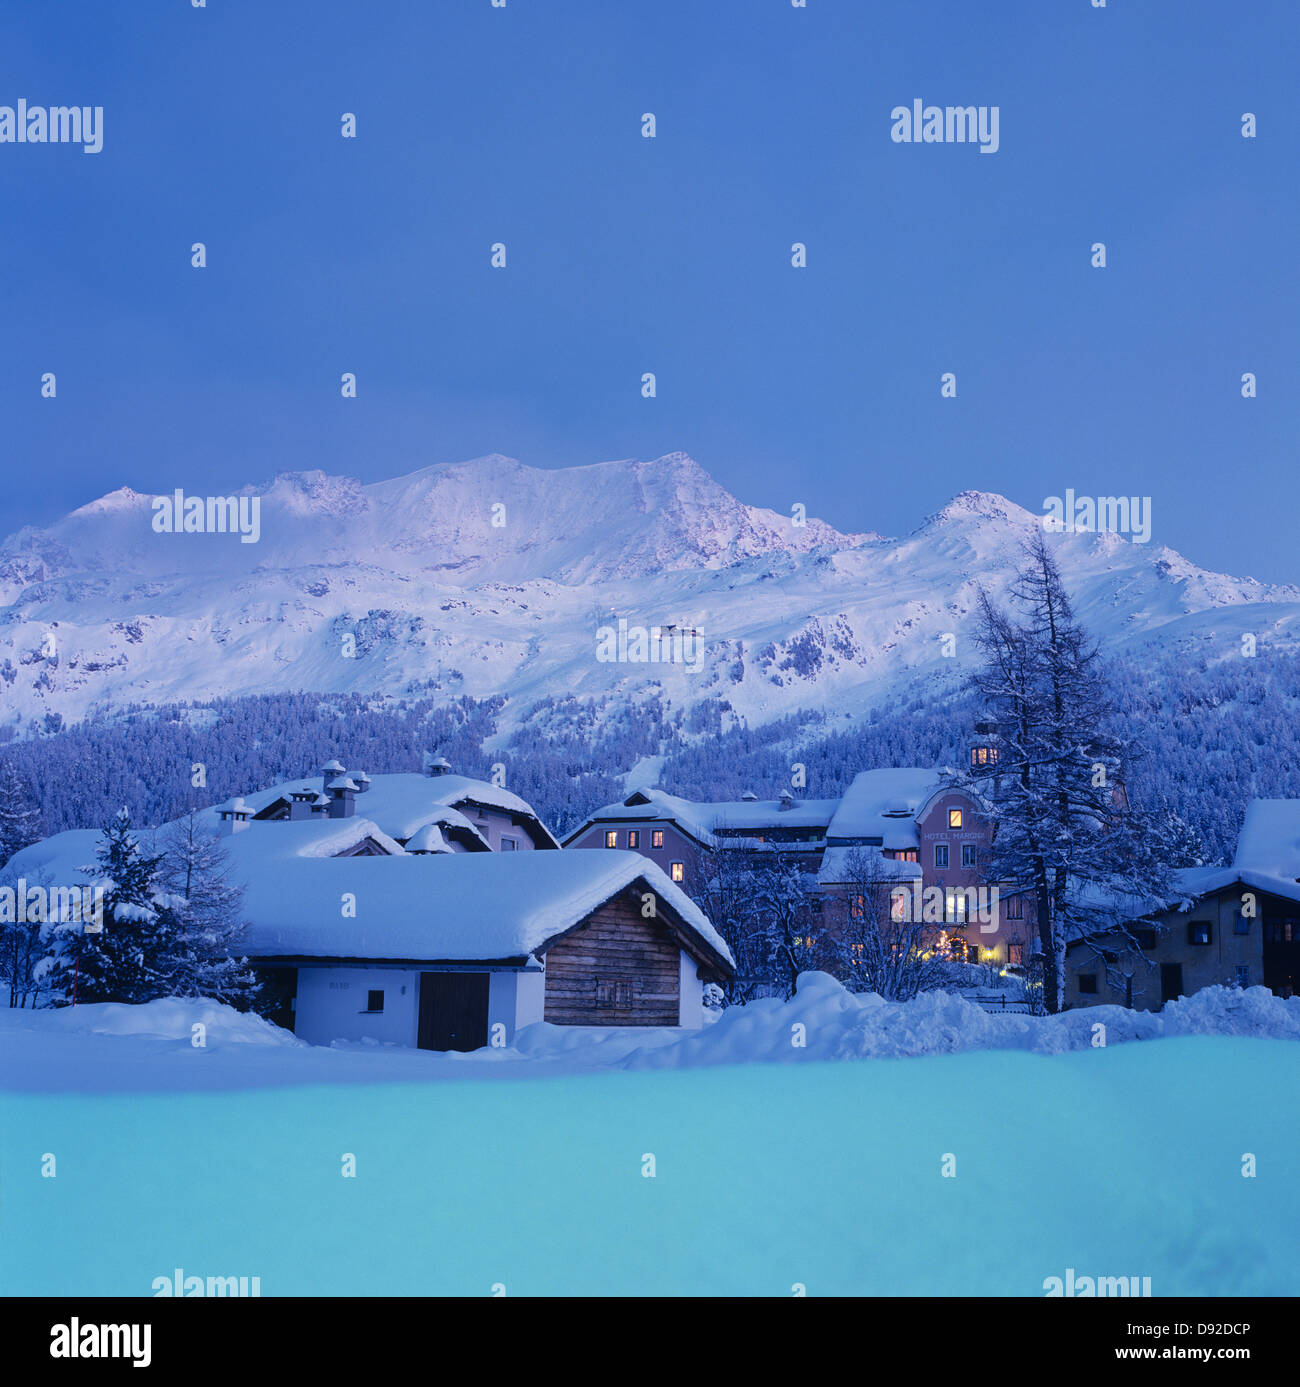 Winter-Abendstimmung in Sils-Baselgia mit Blick zum Piz Corvatsch; winter evening in Sils with Piz Corvatsch in background Stock Photo